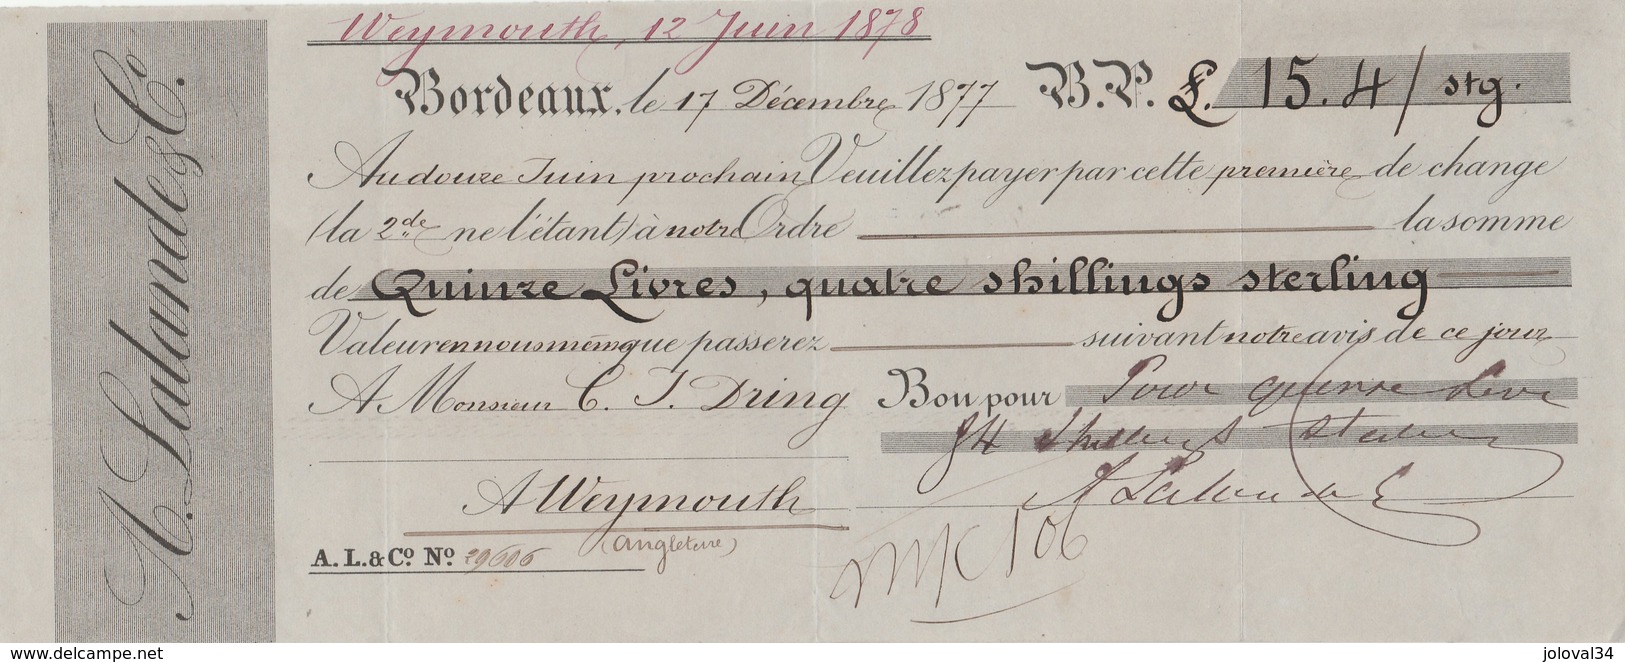 Lettre Change 17/12/1877 LALANDE Vins BORDEAUX Gironde Pour Dring Weymouth Royaume Uni - Lettres De Change